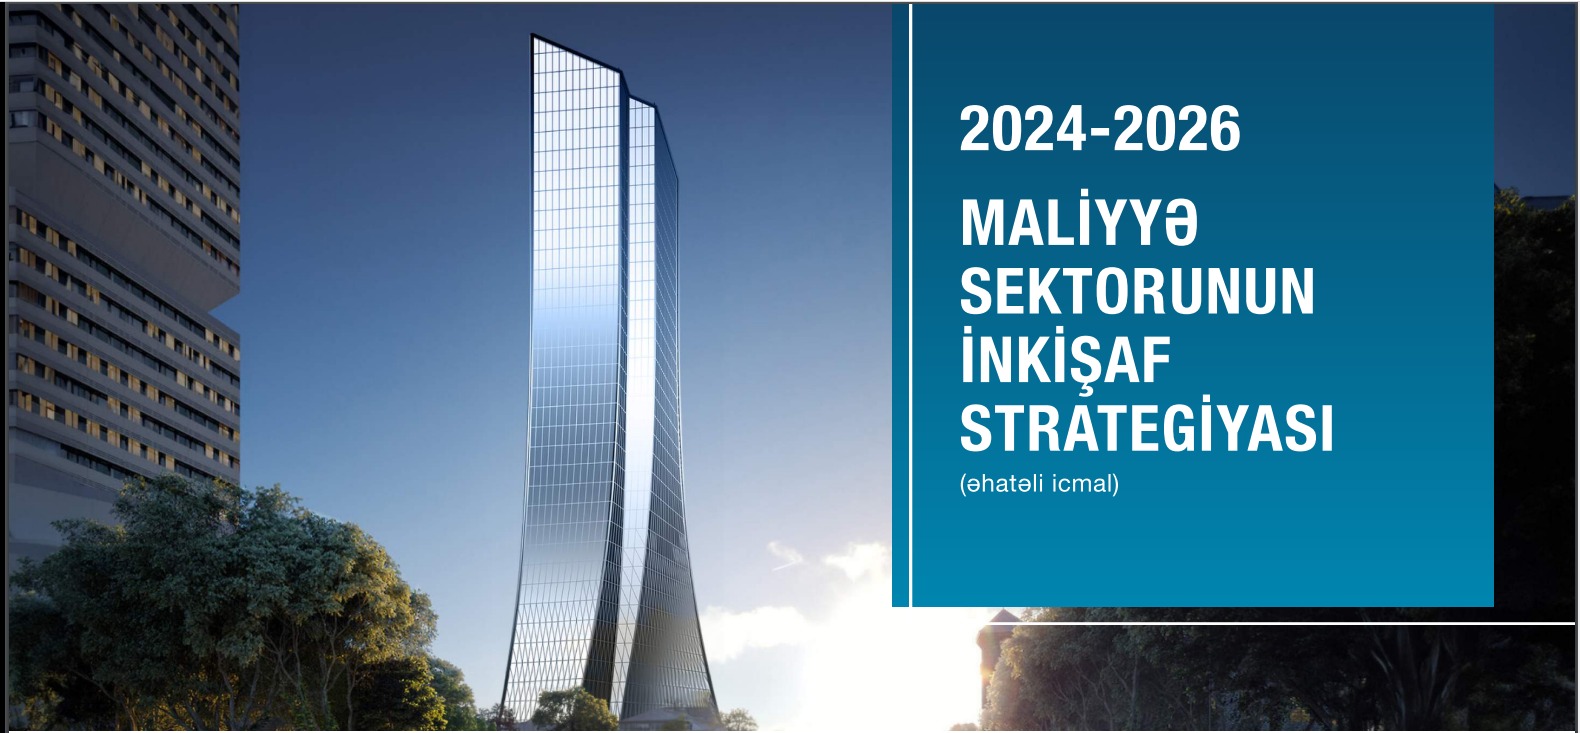  Azərbaycan Respublikası Mərkəzi Bankının İdarə Heyəti  “2024-2026-cı illərdə maliyyə sektorunun inkişaf Strategiyası” təsdiq etmişdir.